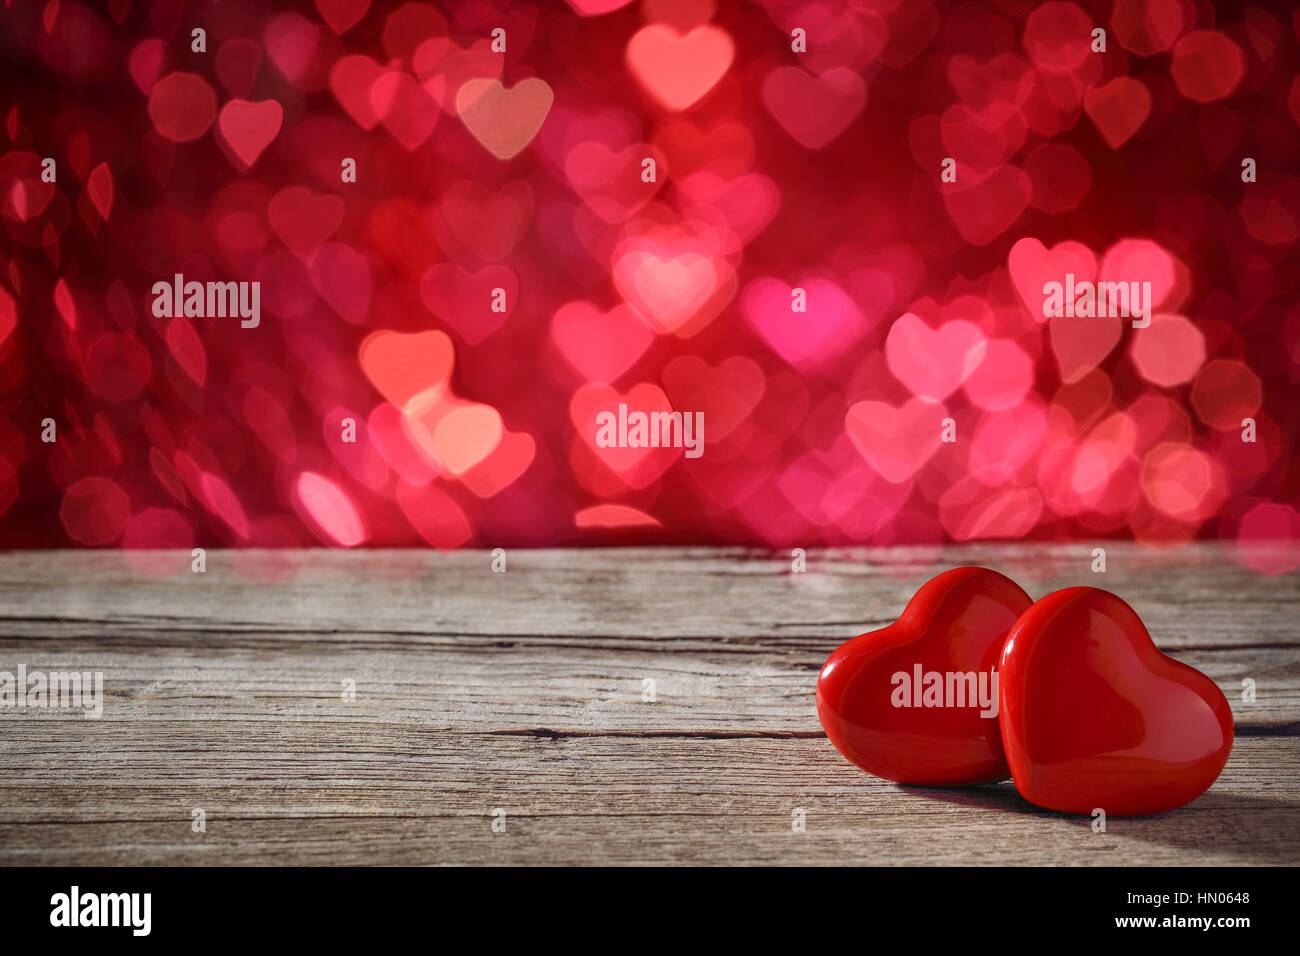 Coeur sur fond abstrait. Valentine's Day background Banque D'Images